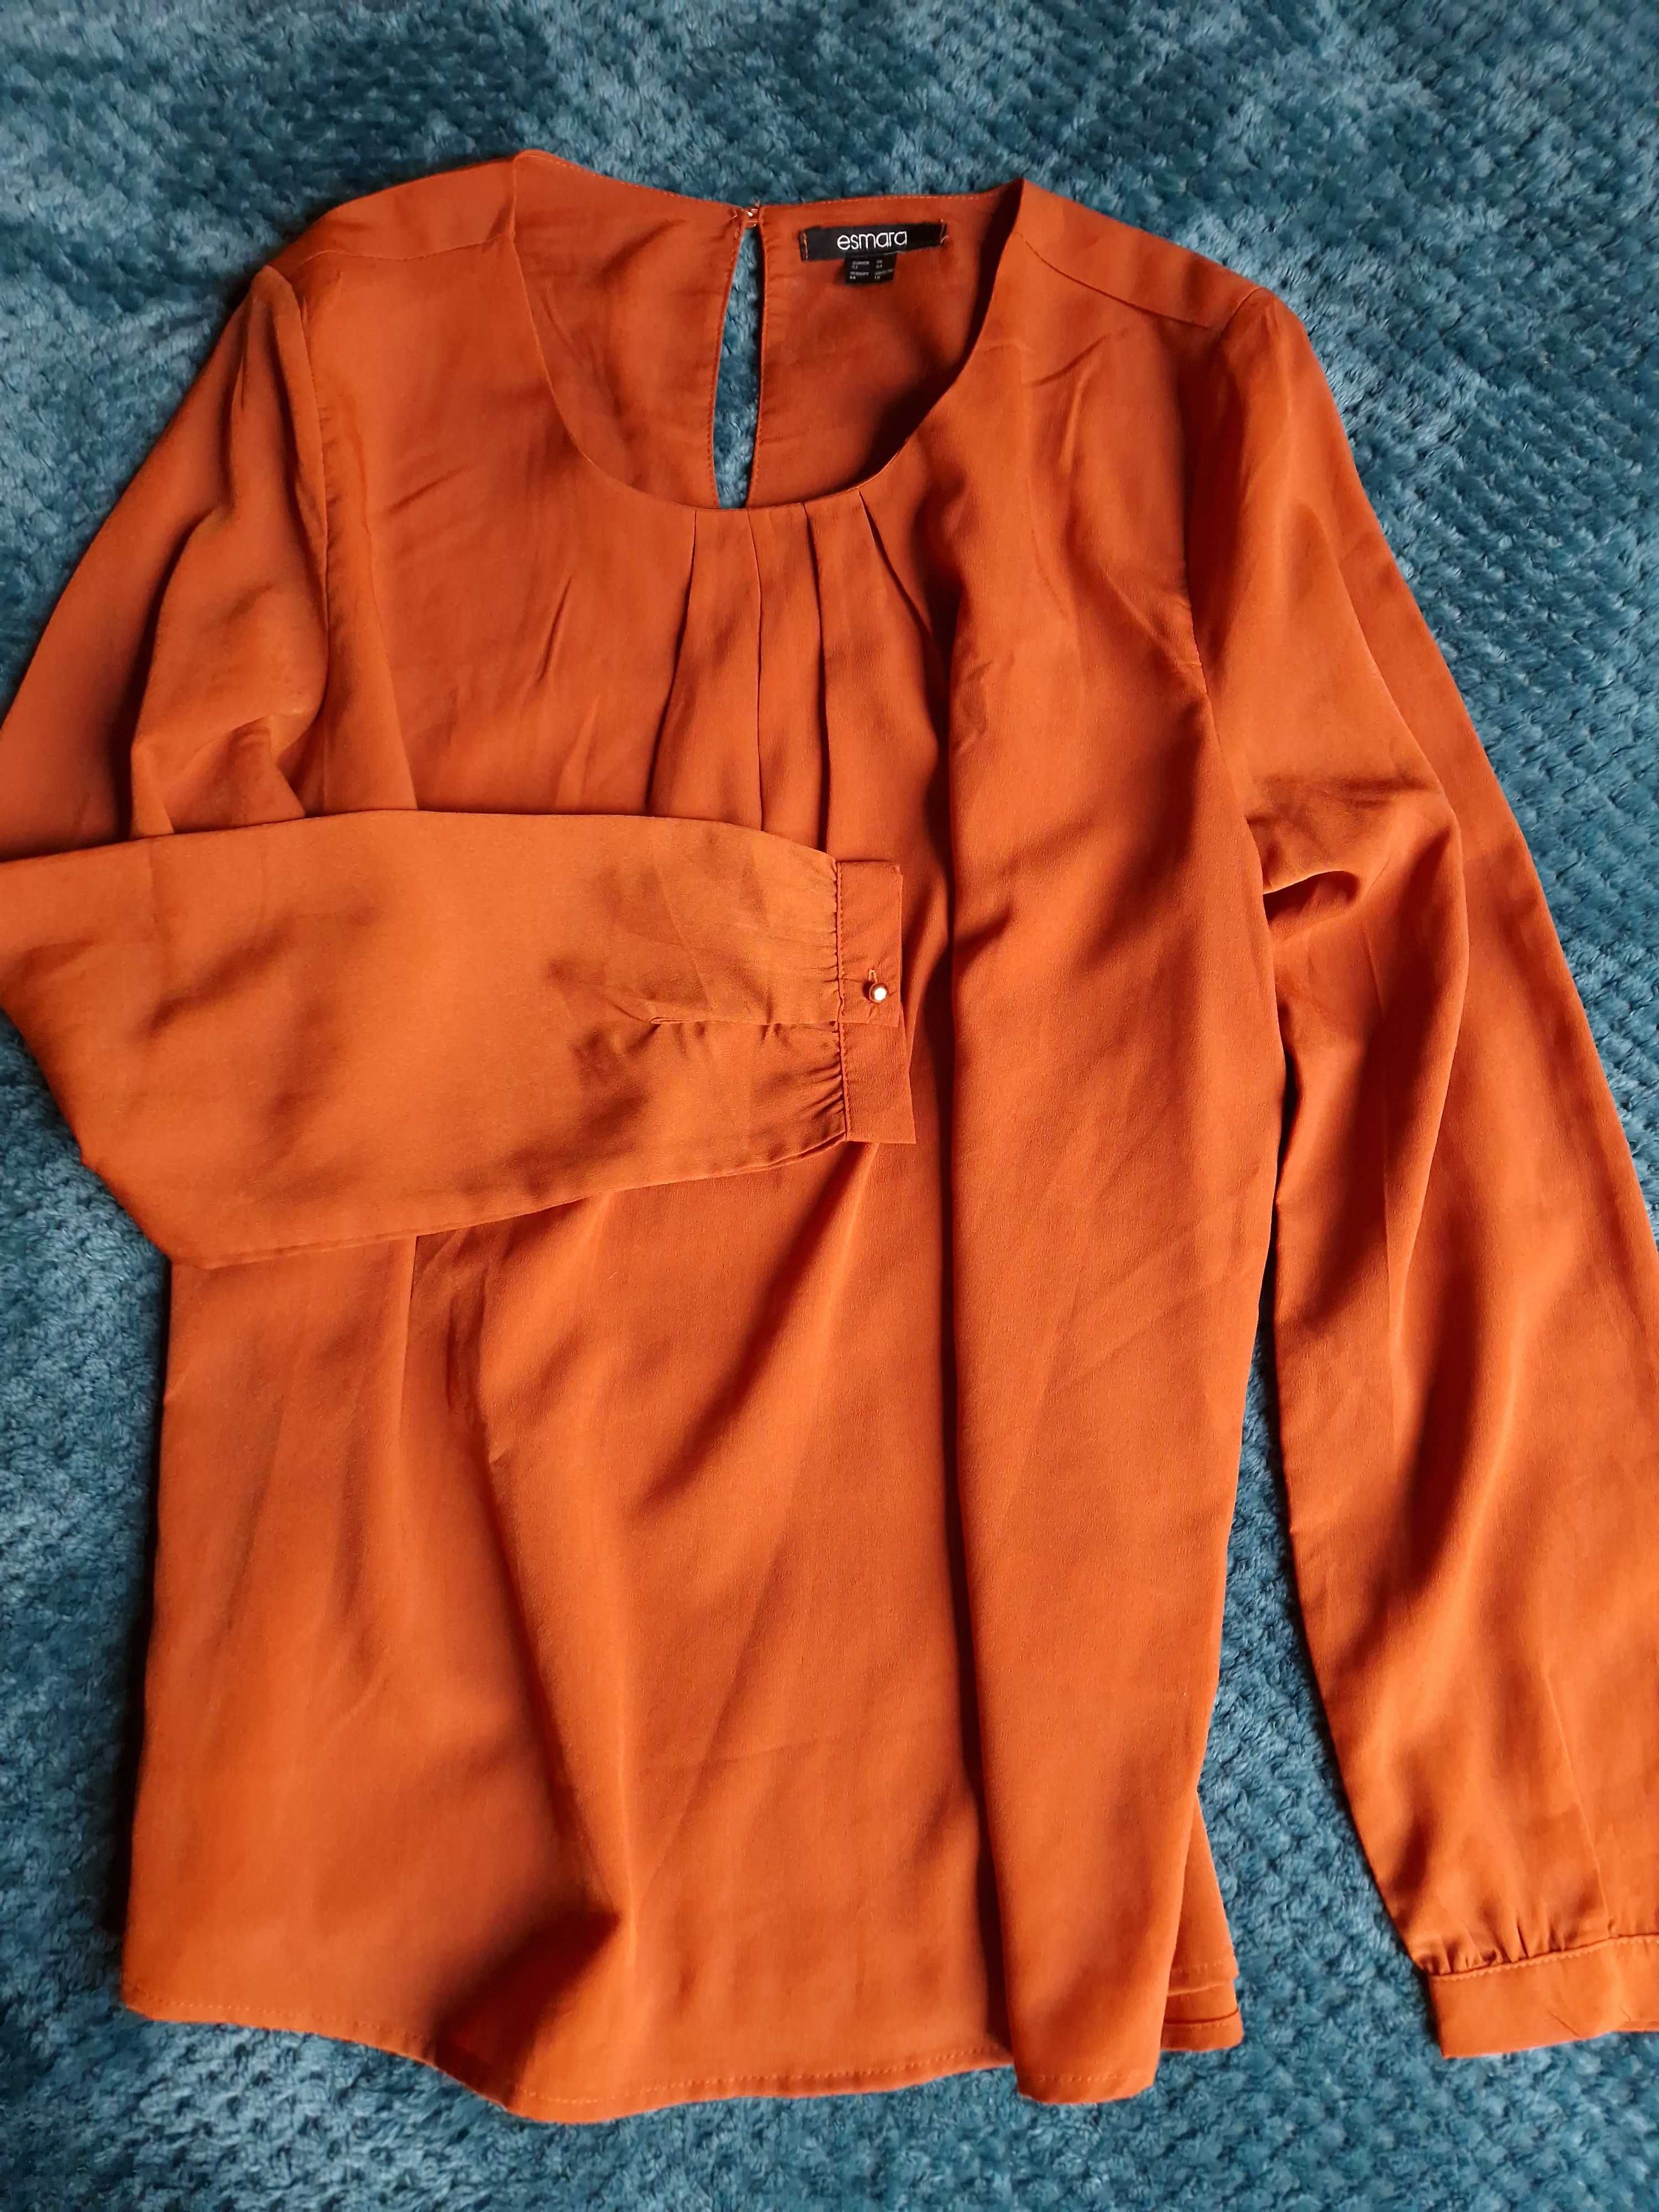 Koszula w kolorze jesieni - pomarańczowa elegancka 42